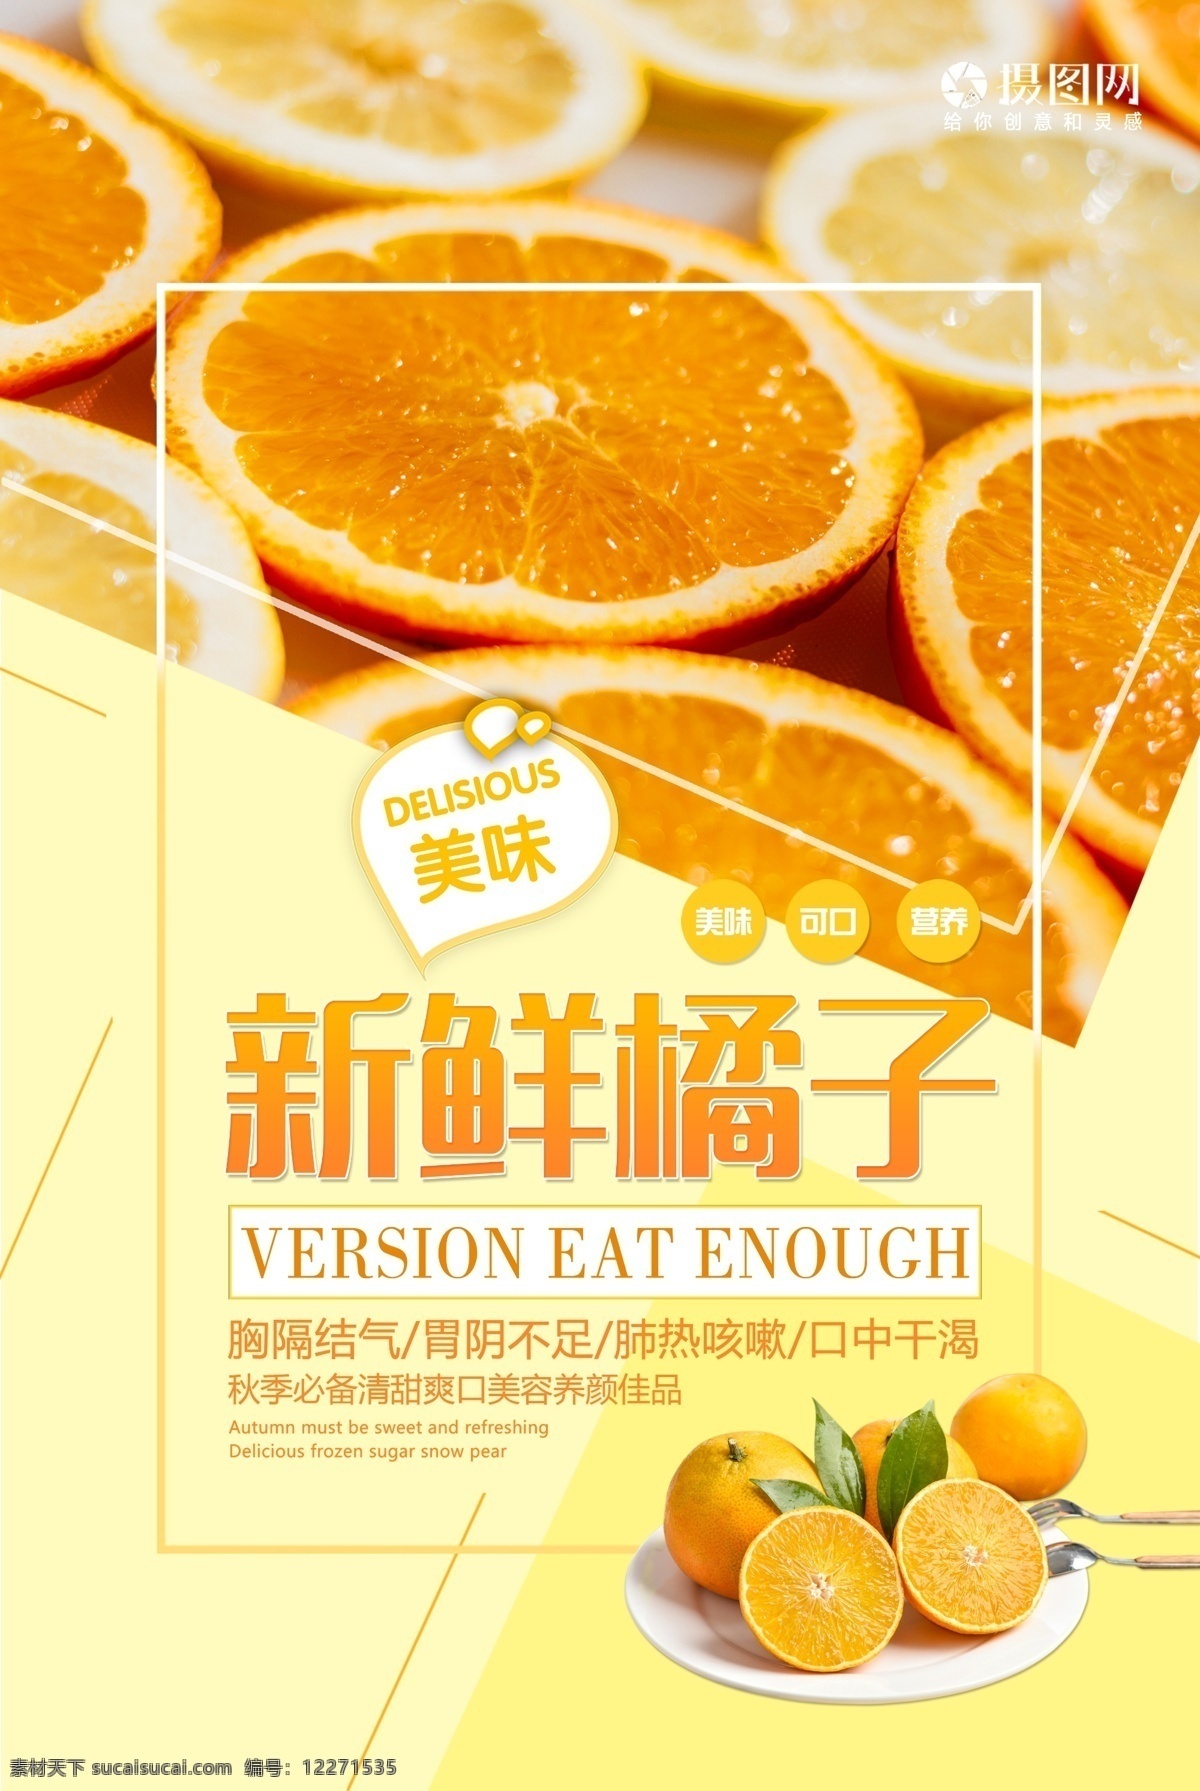 新鲜 橘子 水果 海报 新鲜橘子 丰富 维生素 美味 水果海报 橘子海报